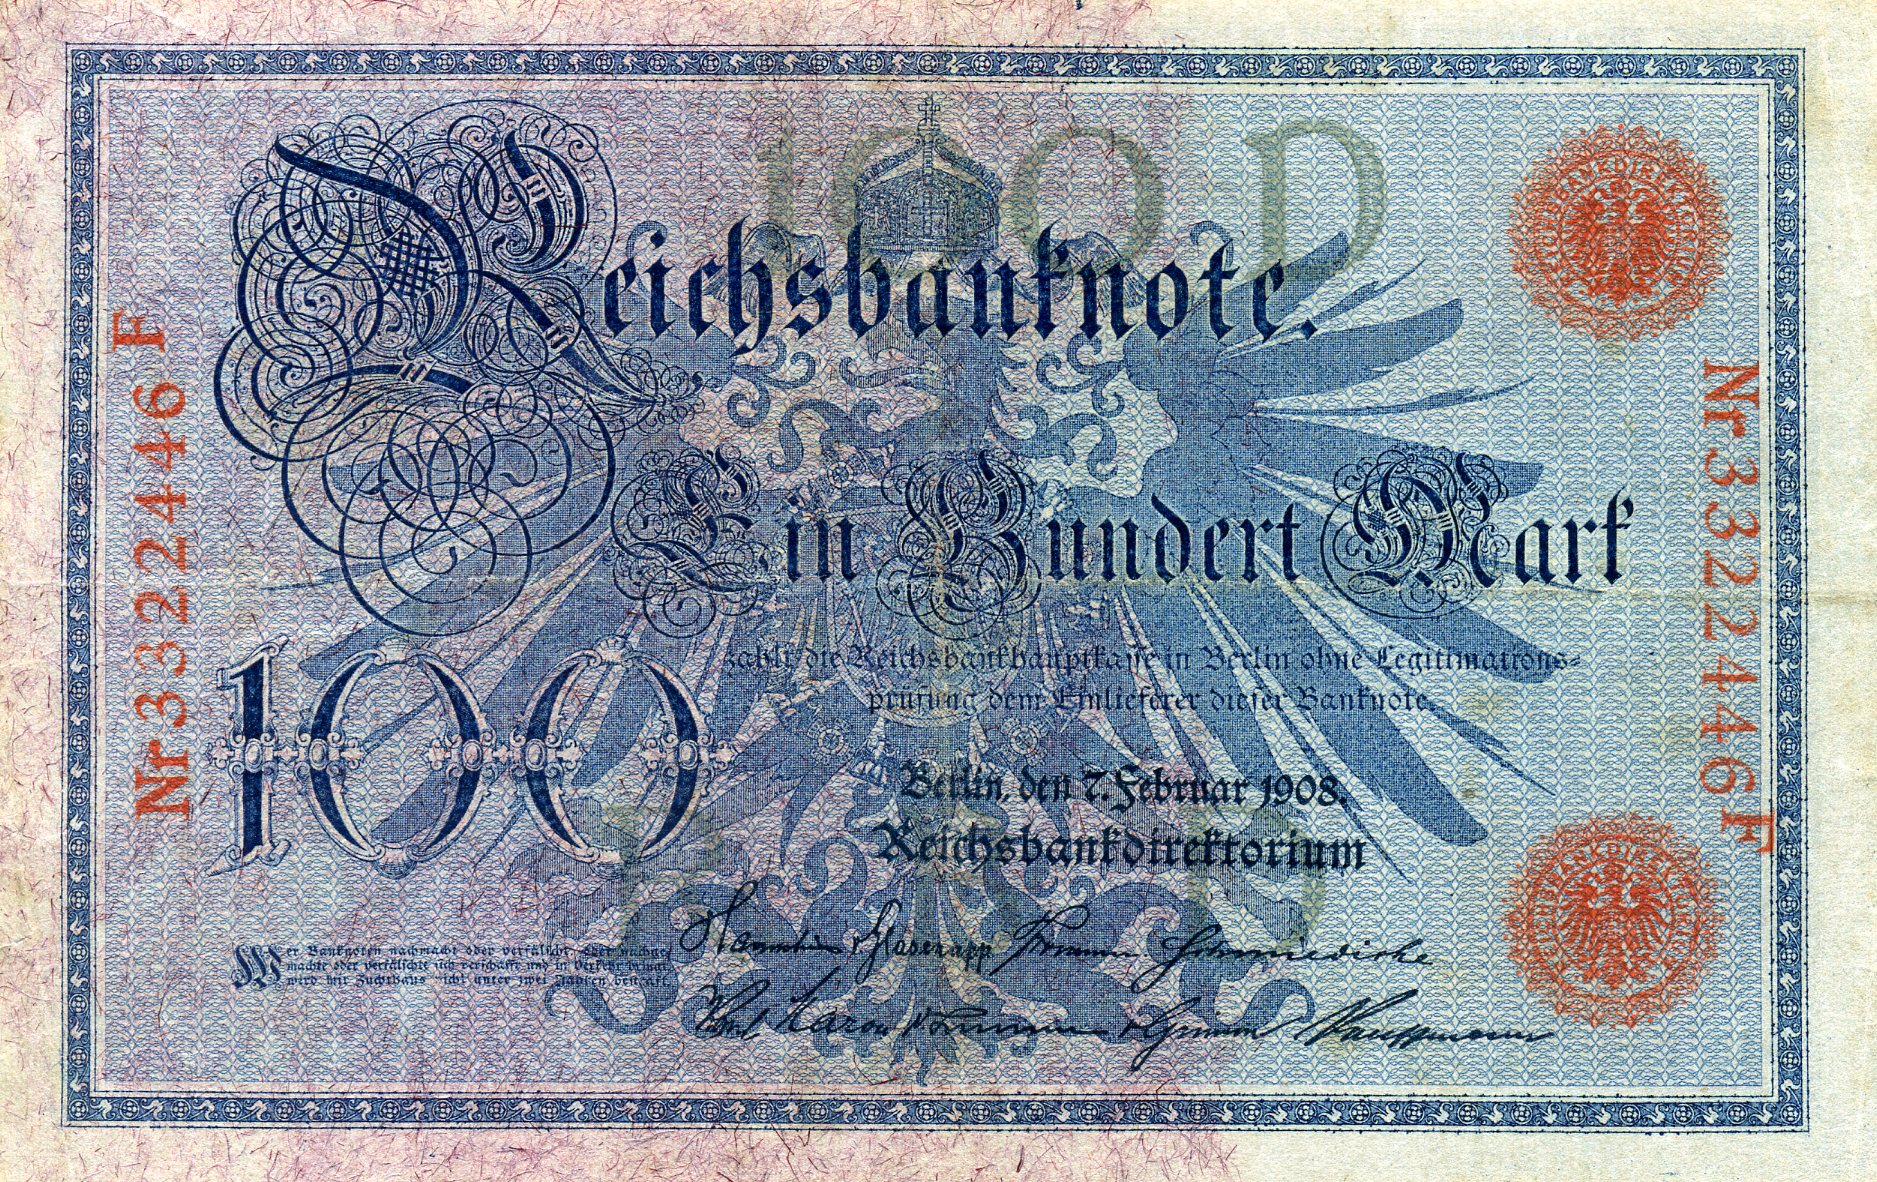 100 марок 7 февраля 1908 года. Красная печать. Аверс. Реферат Рефератович.